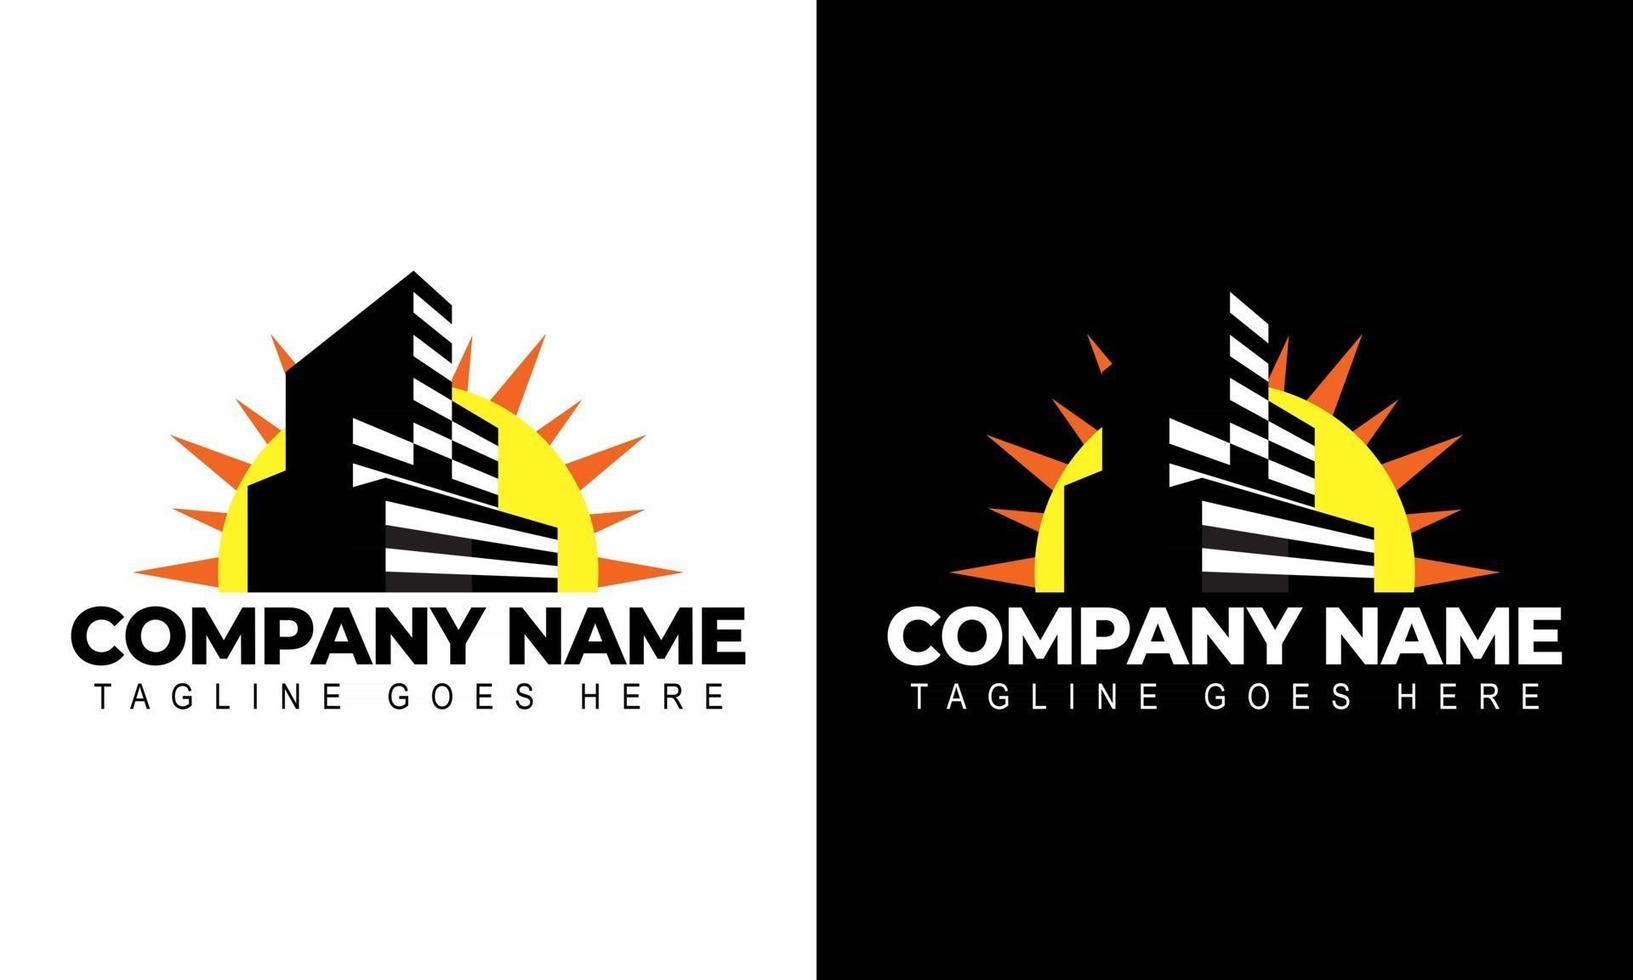 building and sun concept logo design creative inspiration vector